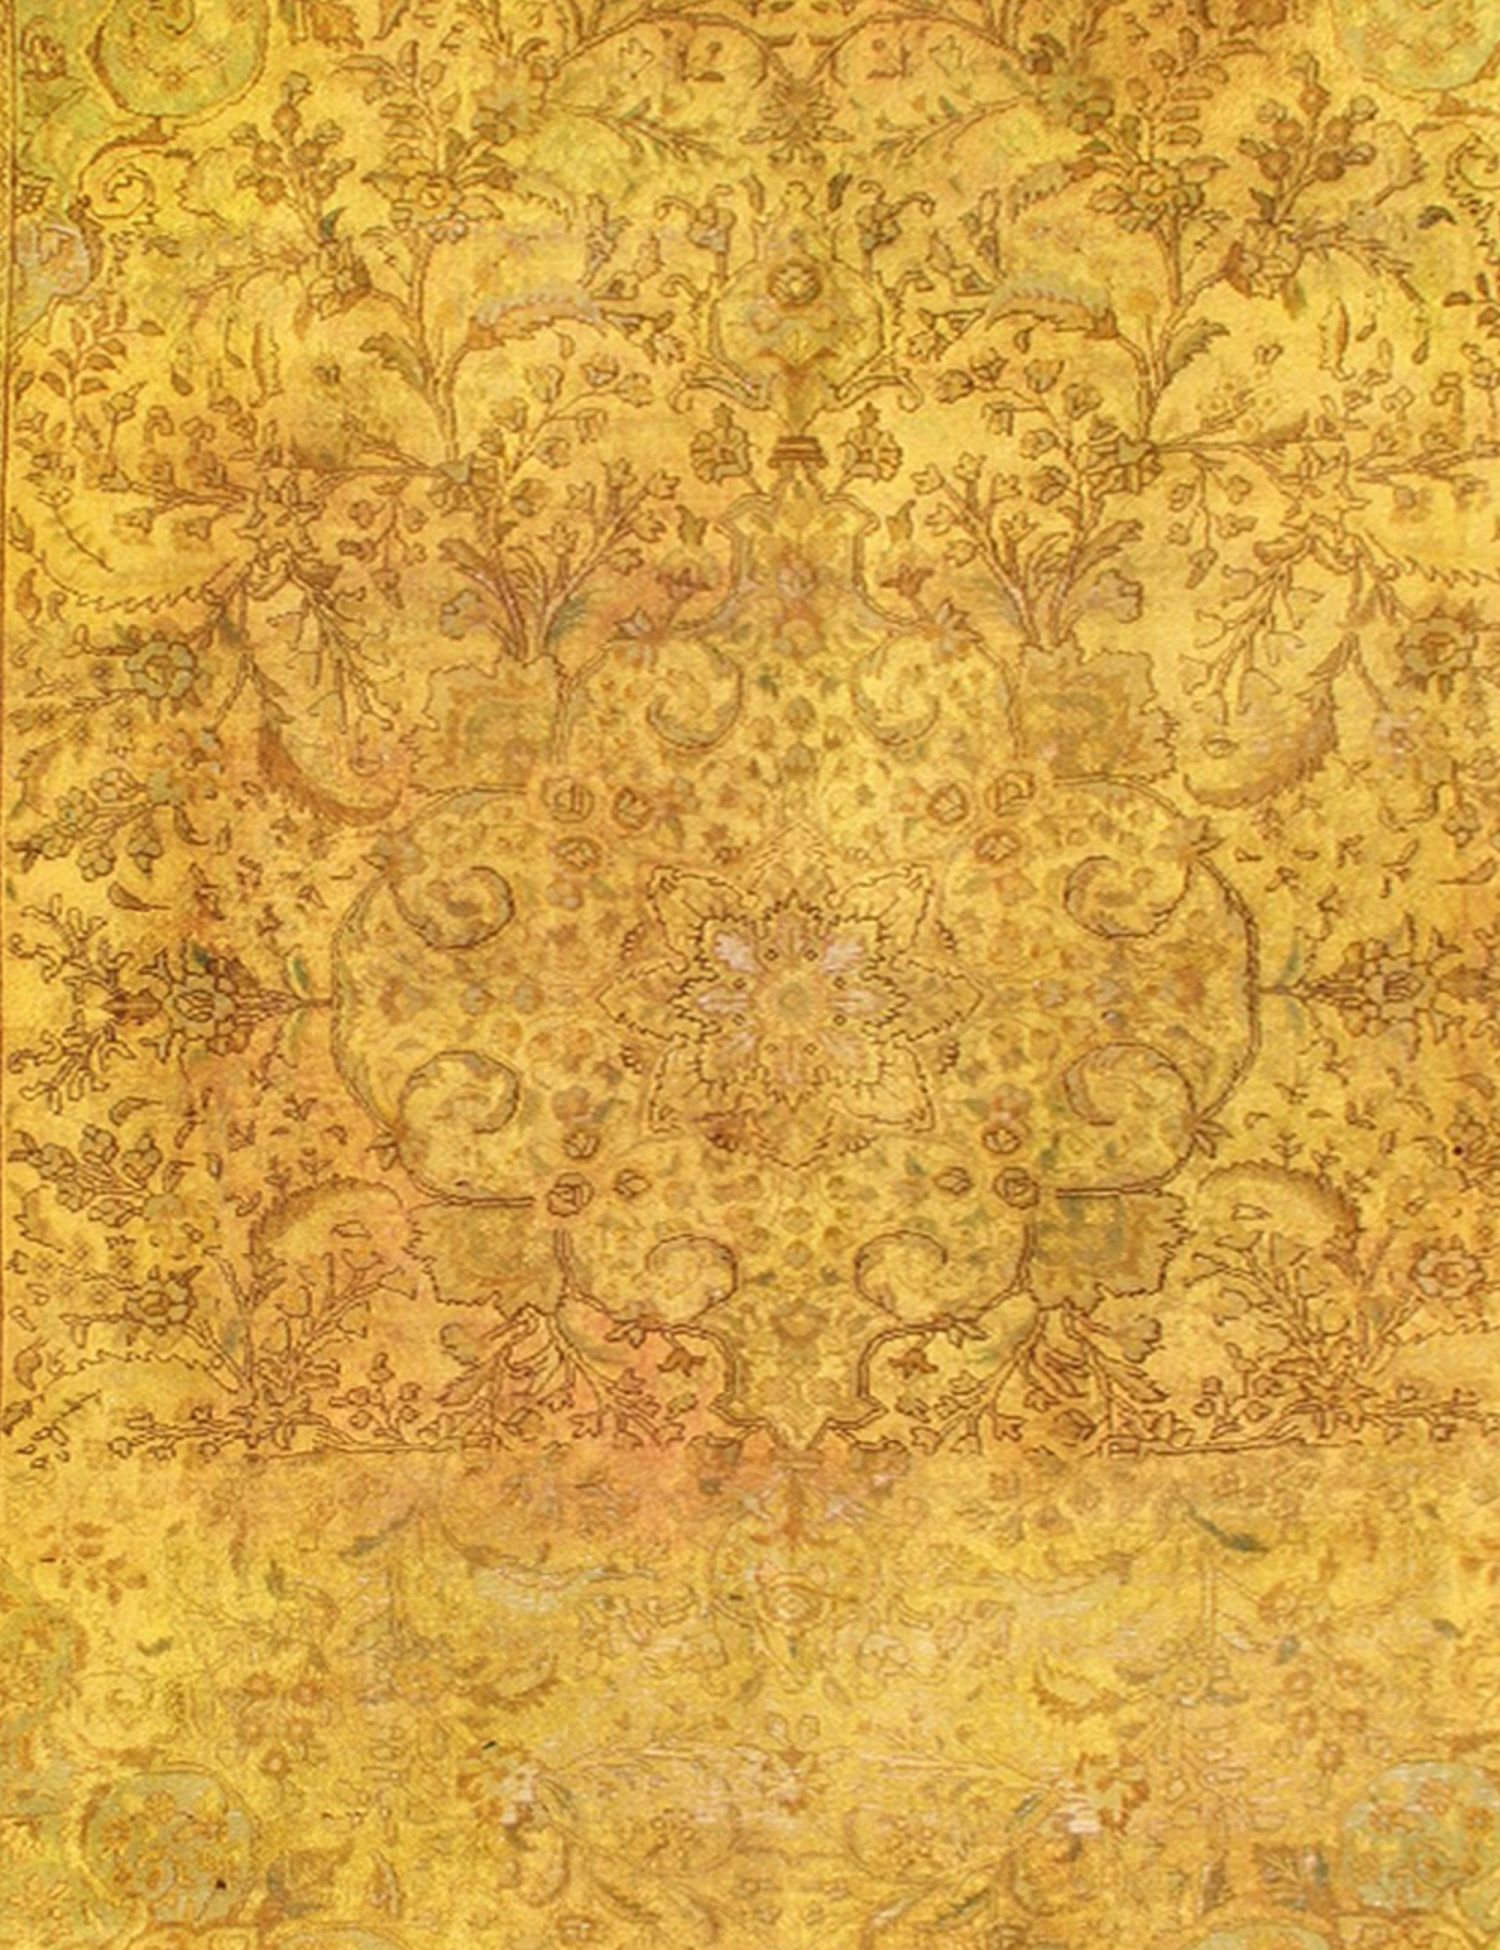 Persischer Vintage Teppich  gelb <br/>355 x 250 cm